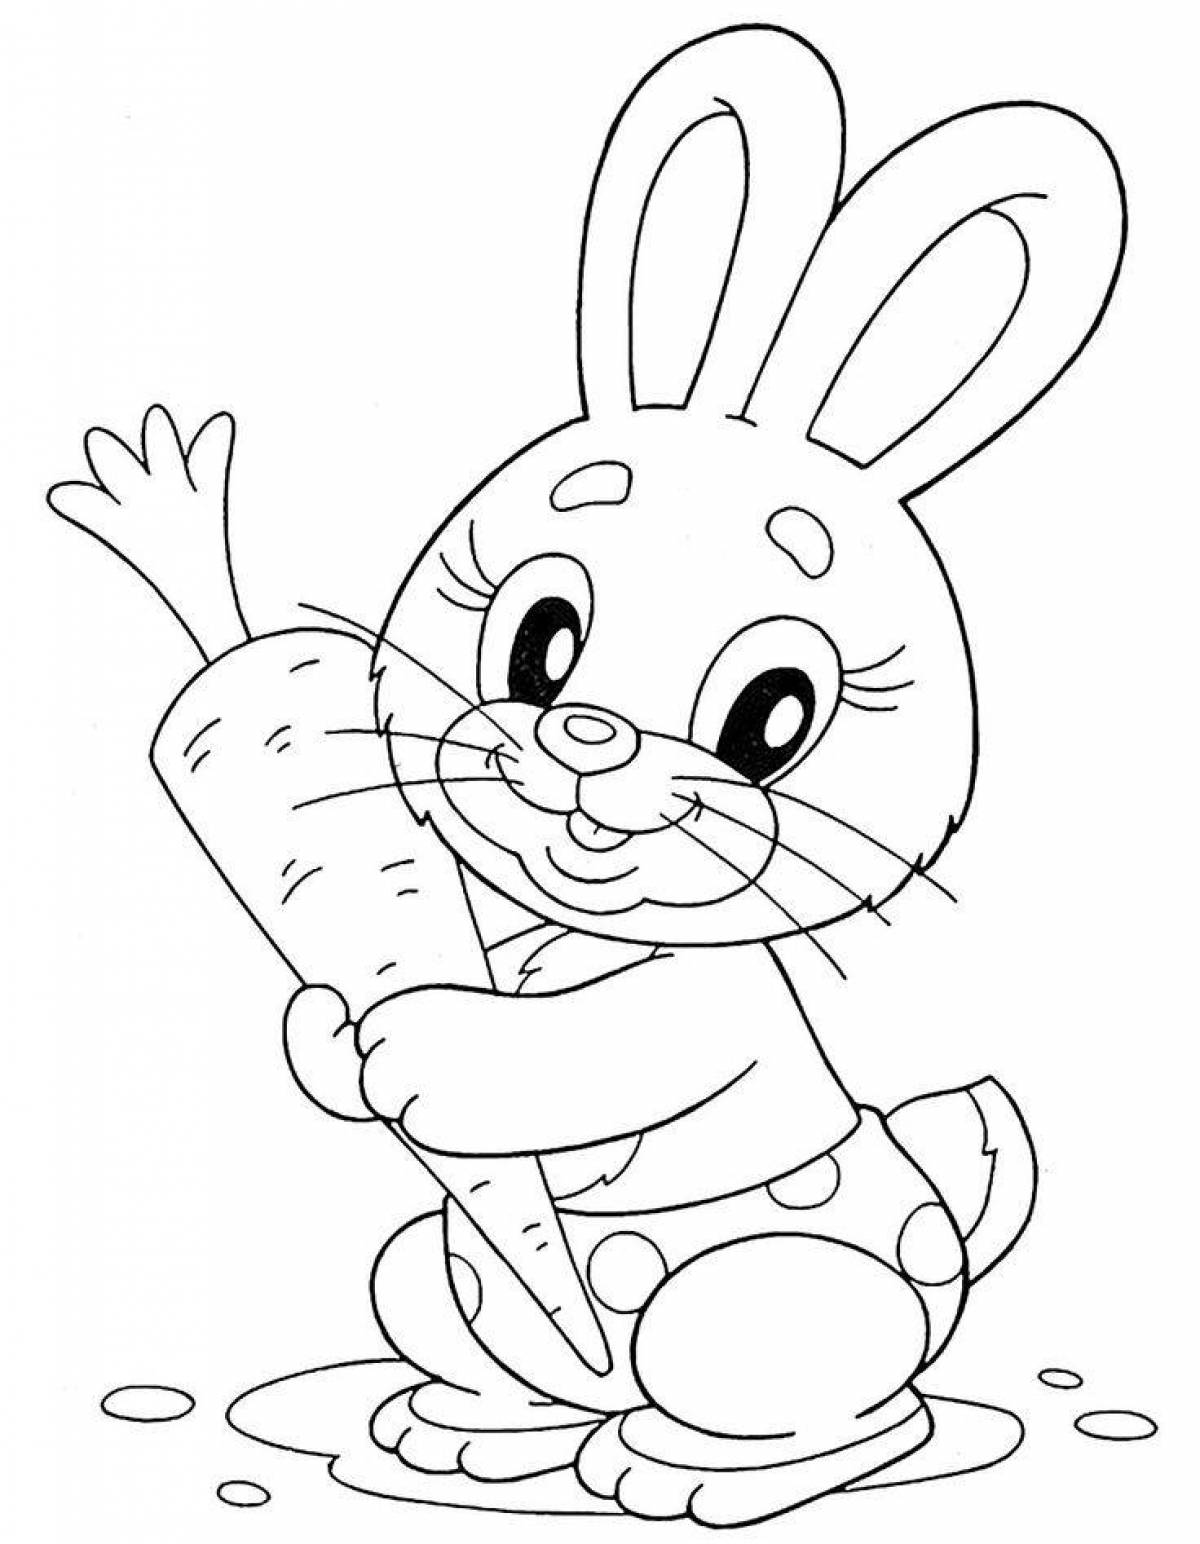 Happy rabbit coloring page